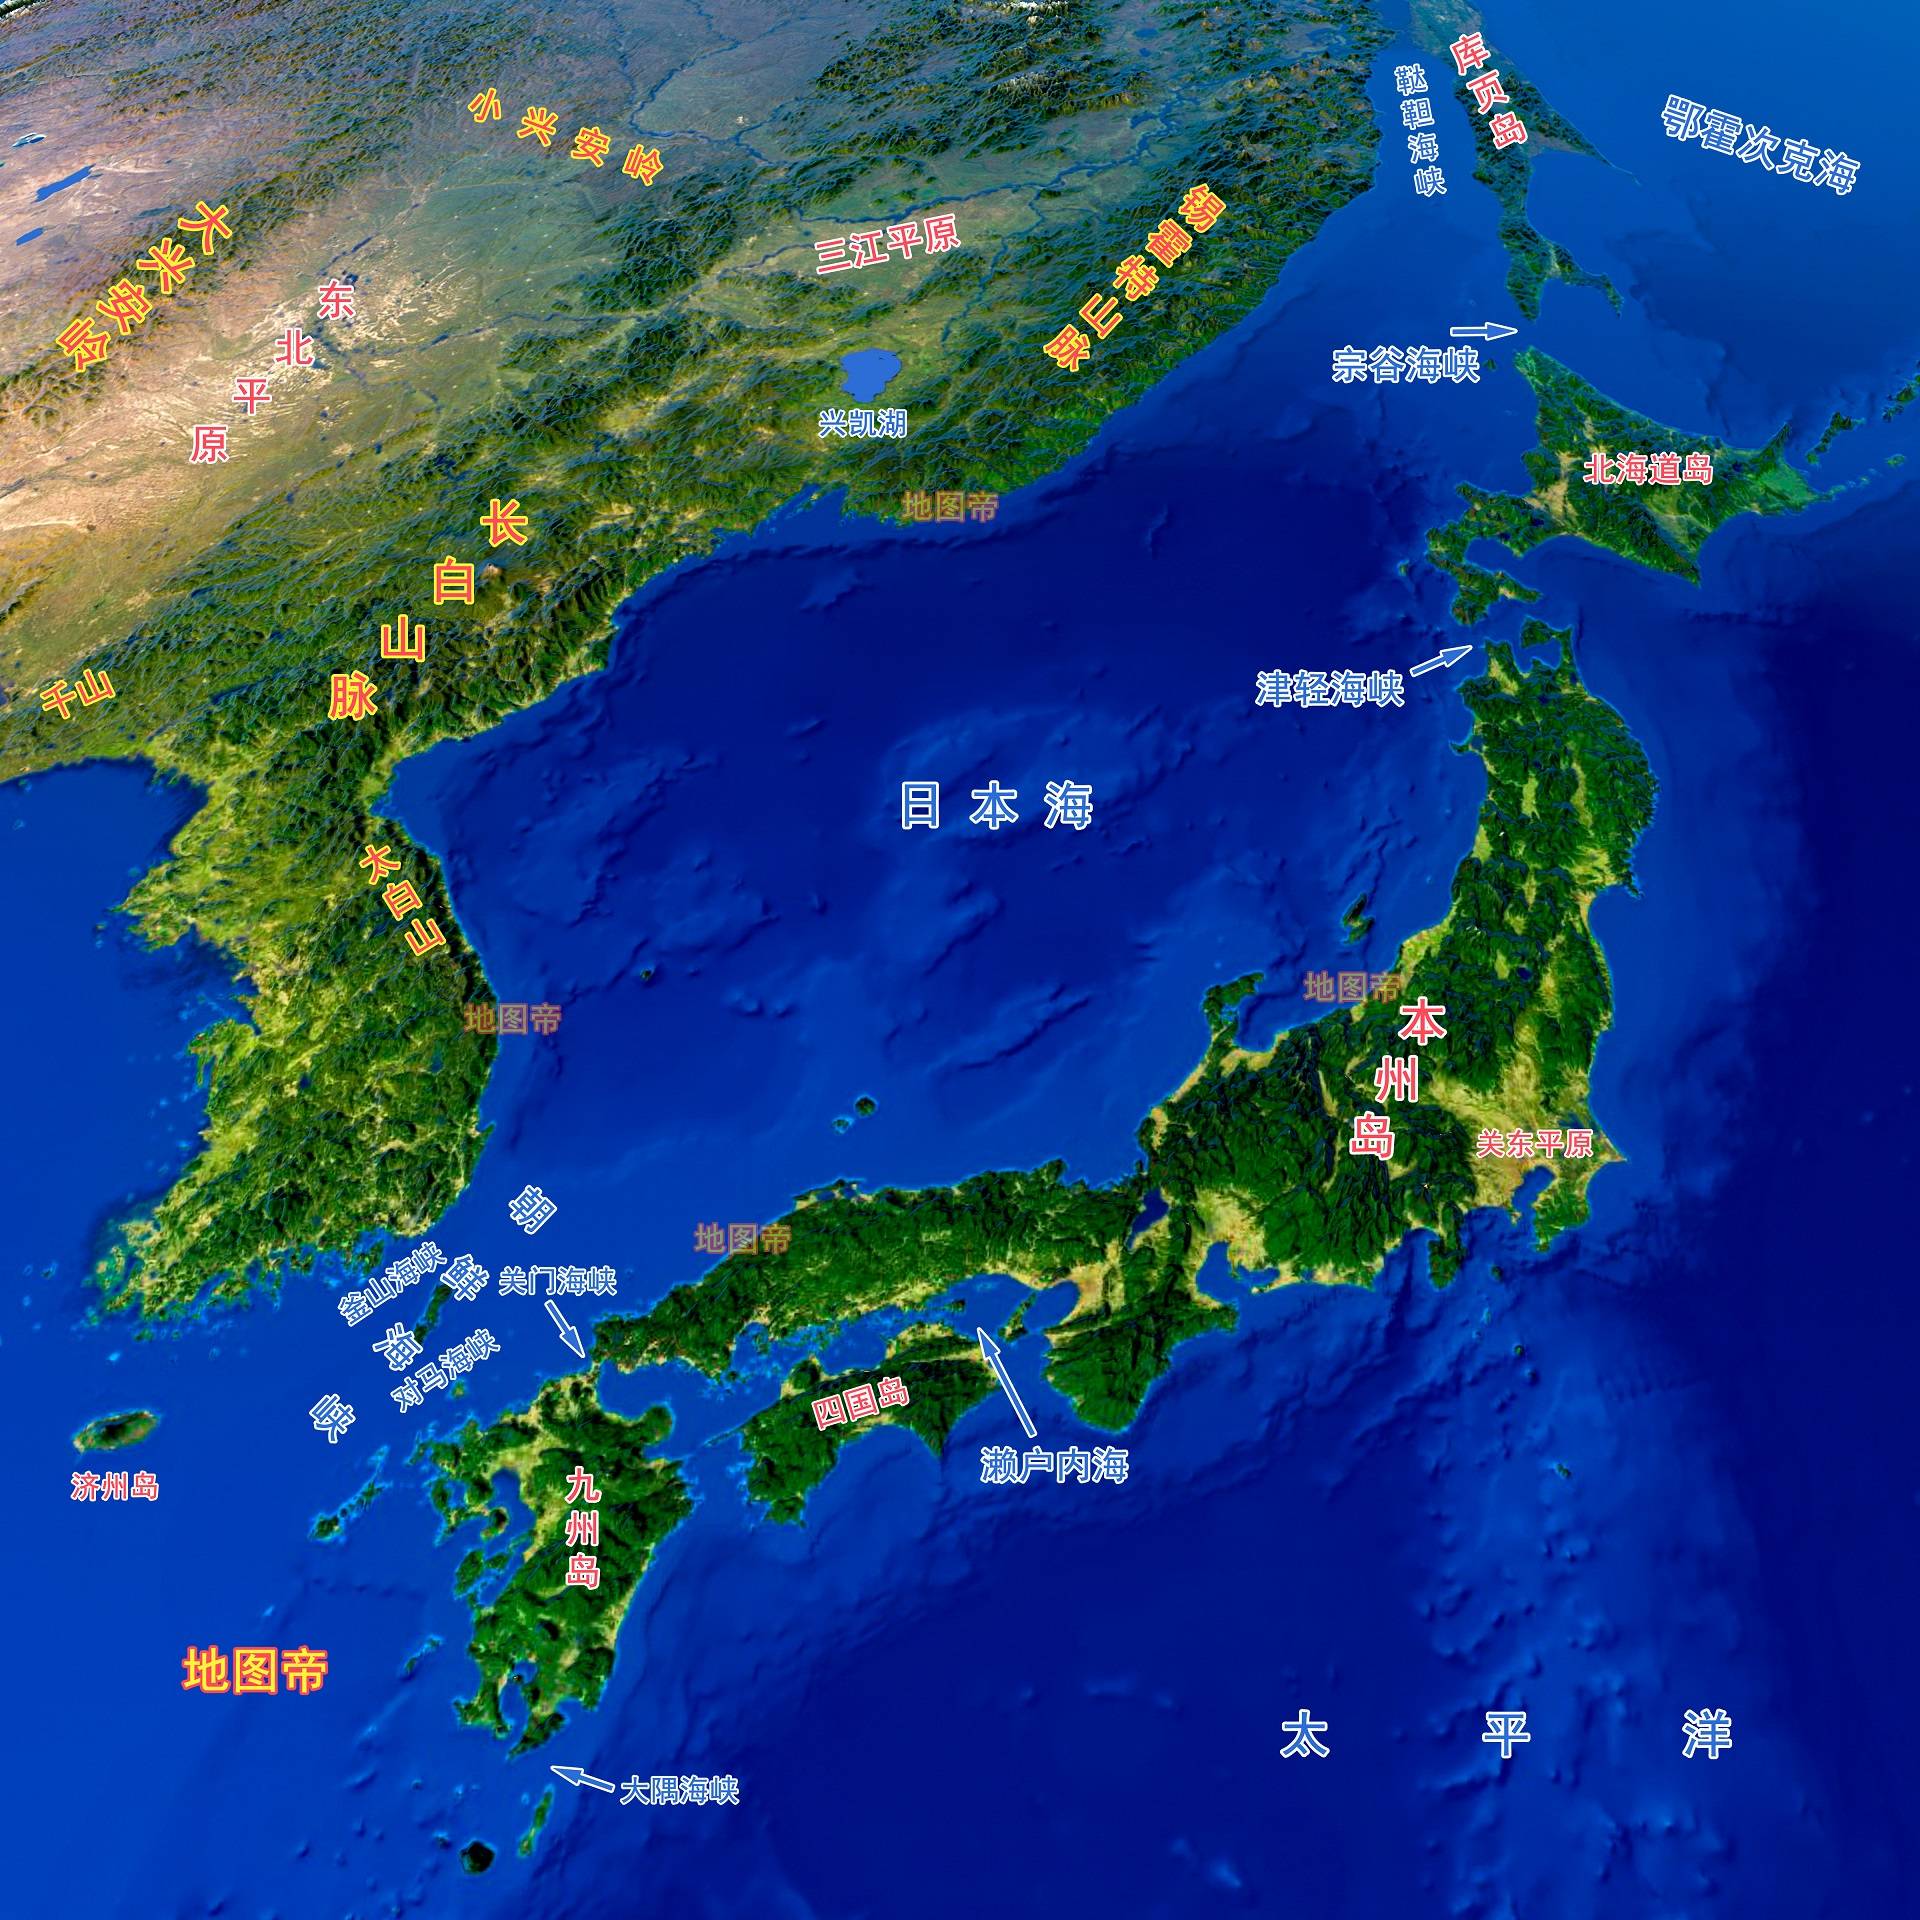 中俄穿越津轻海峡,为何说是日本挖坑埋自己?_琉球群岛